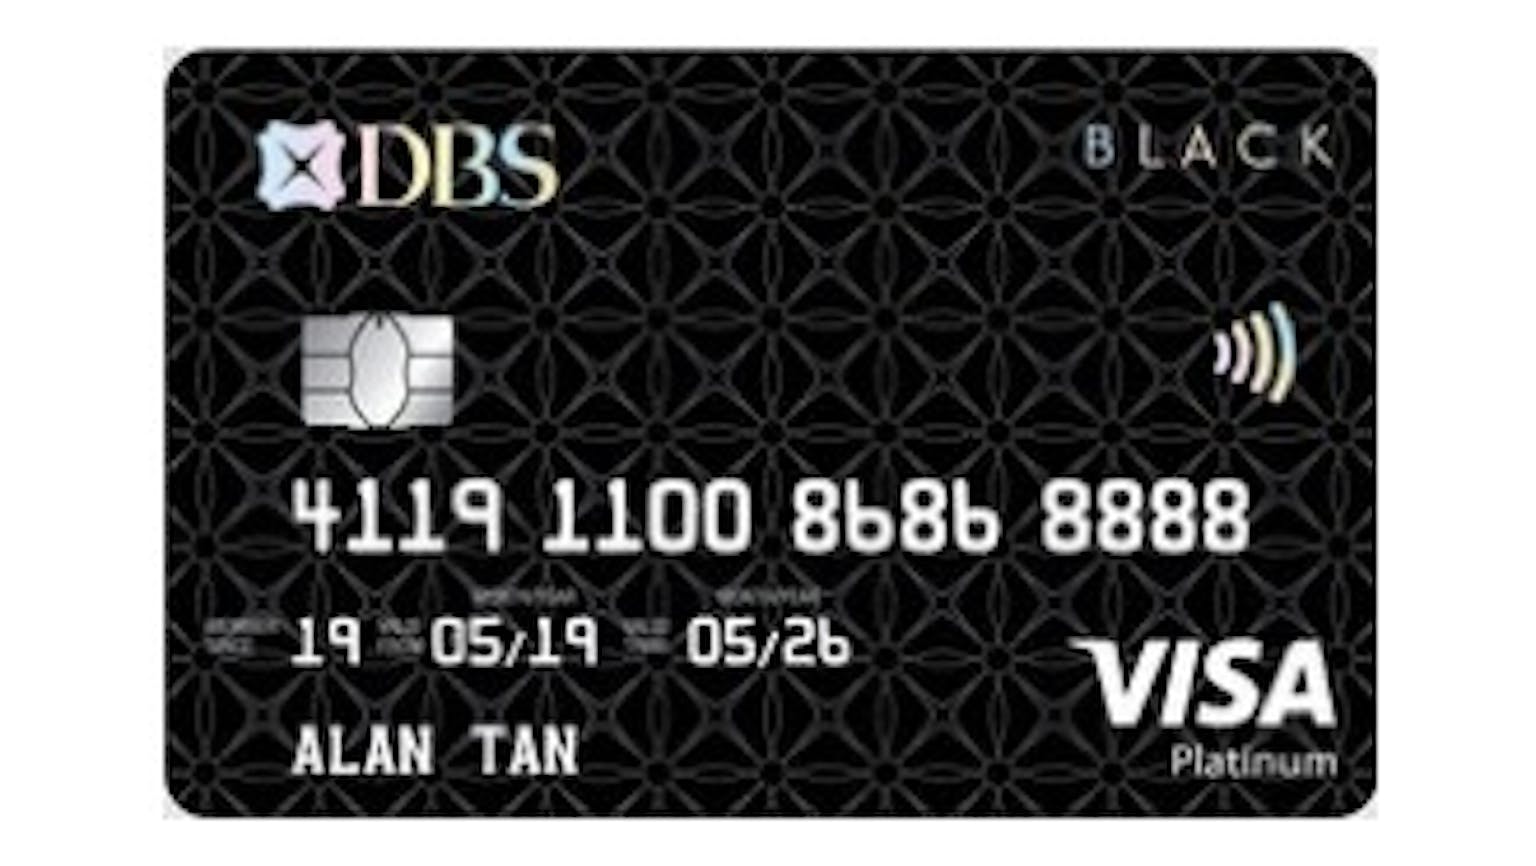 DBS Black VISA Card